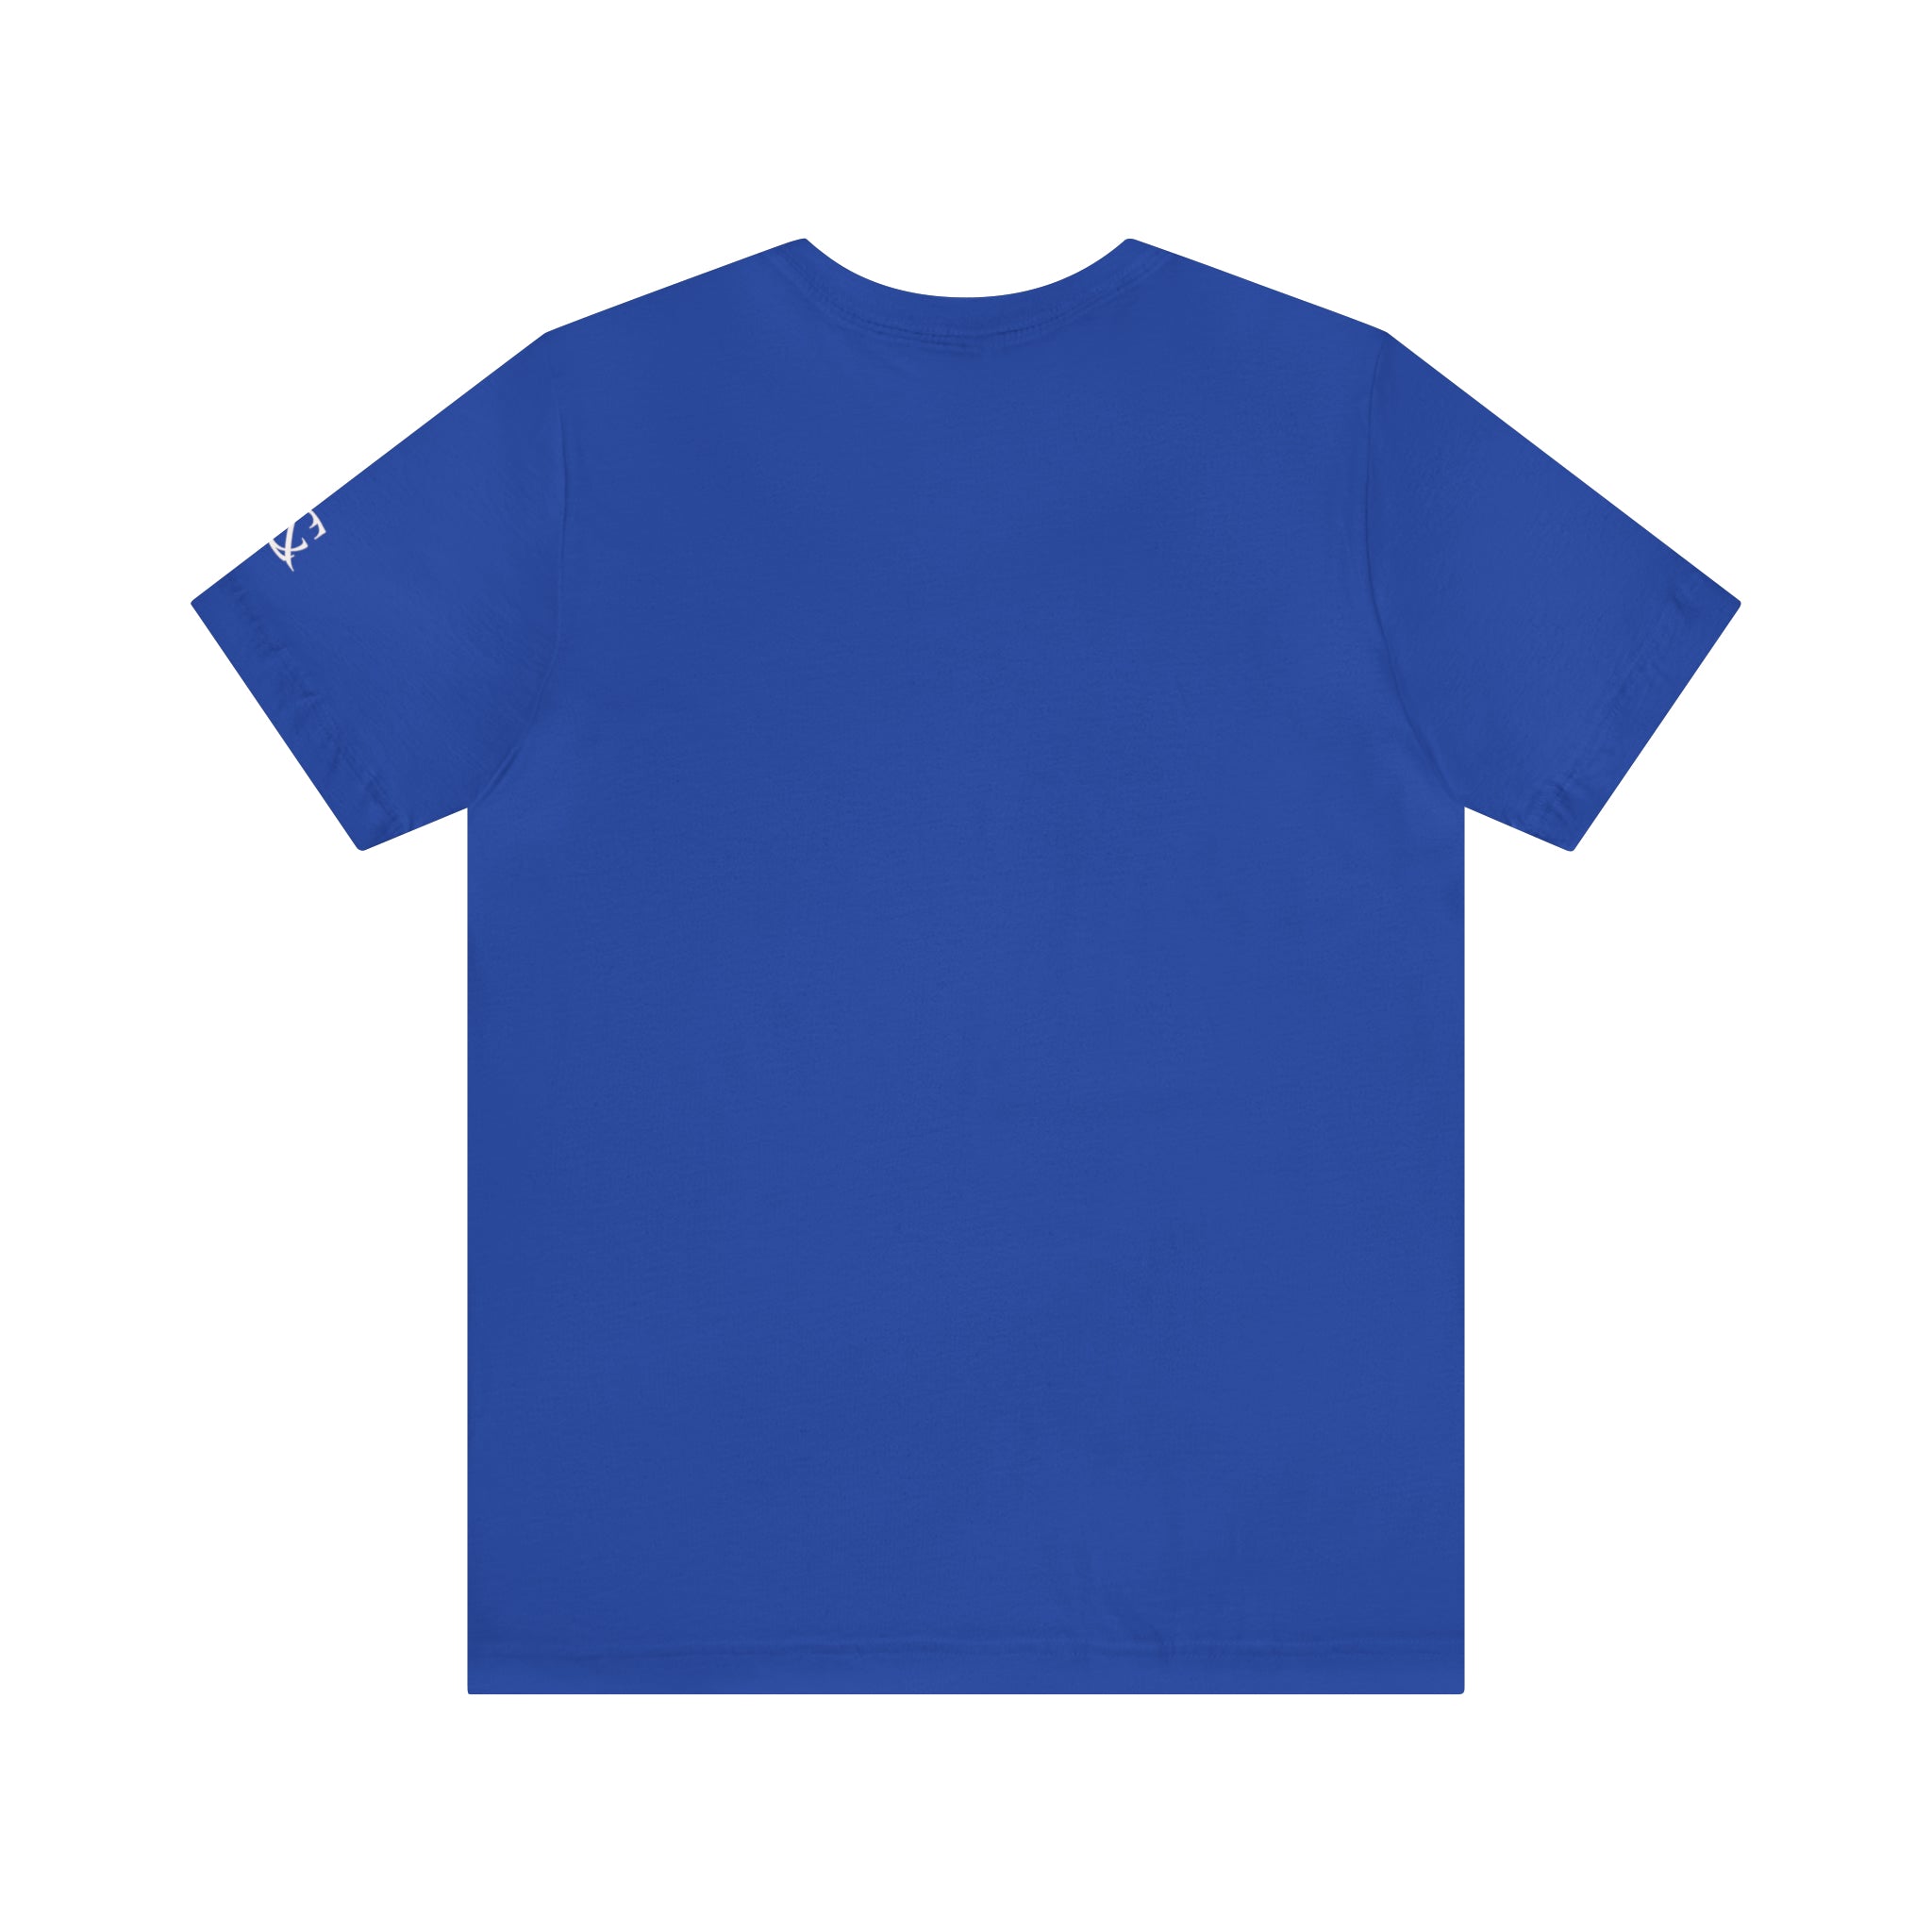 Customoi Luxury Unisex Jersey Short Sleeve T-Shirt